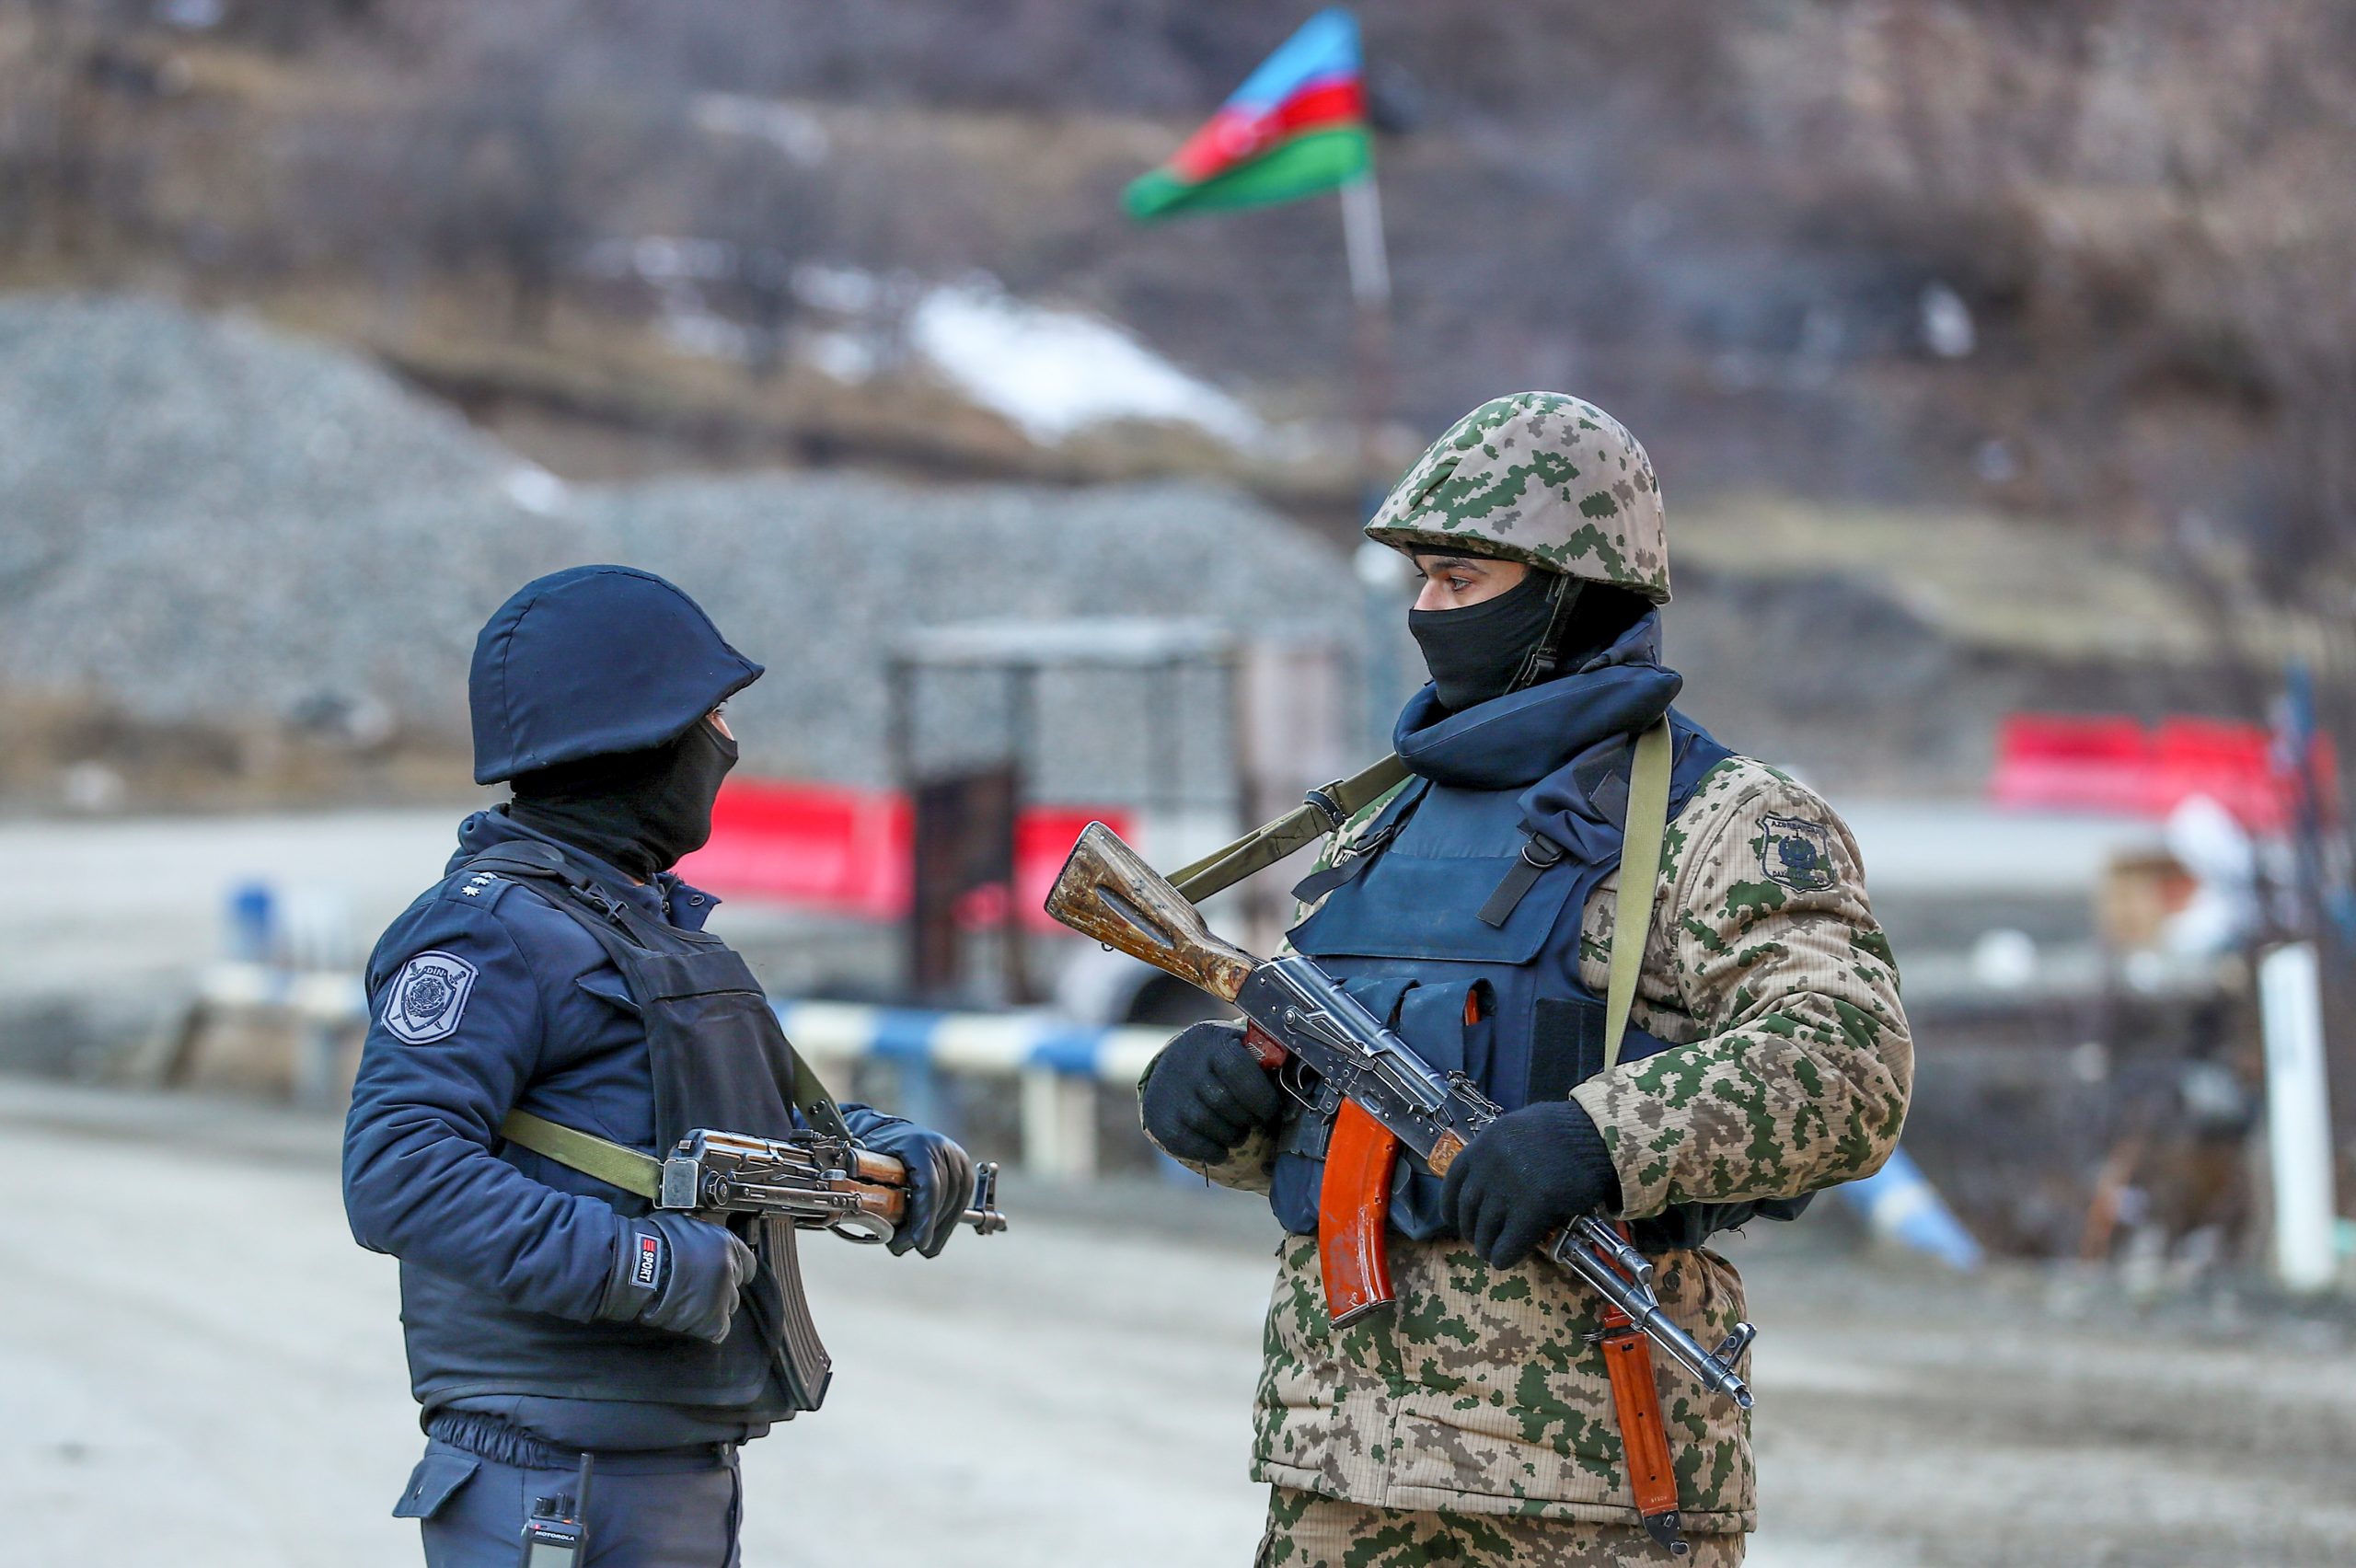 O conflito Armênia-Azerbaijão e o futuro da integração militar CSTO:  realinhamentos e impactos regionais – Observatório de Regionalismo